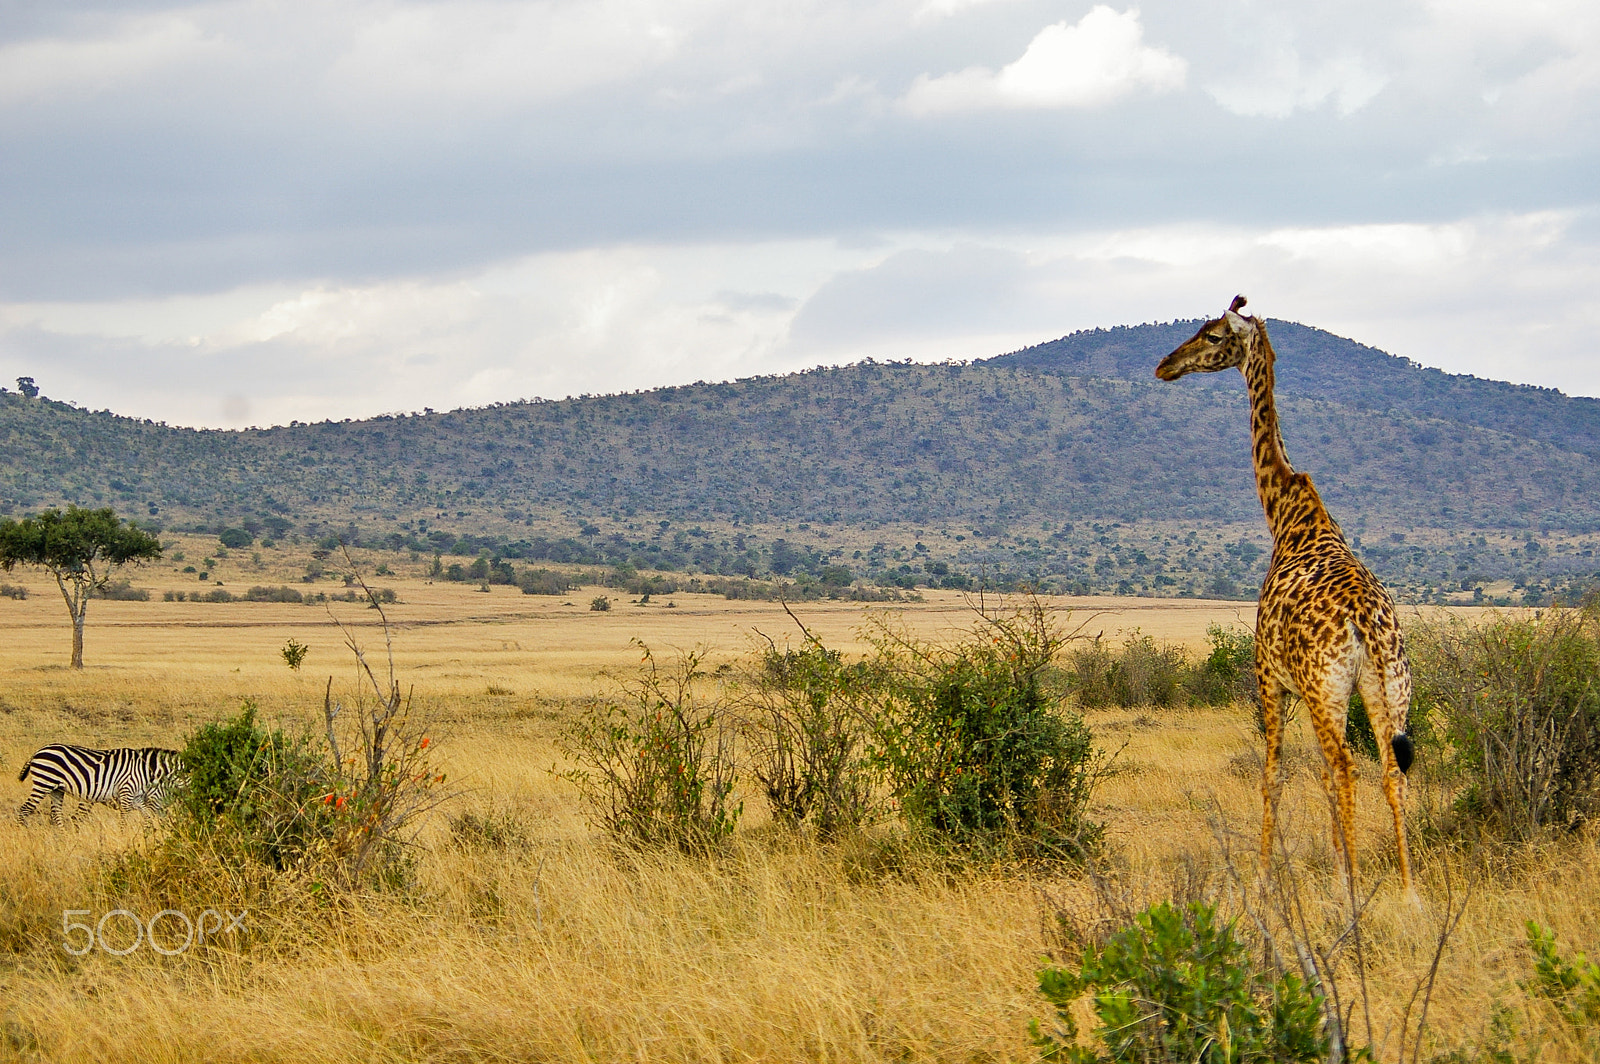 Pentax K100D + Pentax smc DA 50-200mm F4-5.6 ED sample photo. Giraffe in the maasai mara, kenya photography